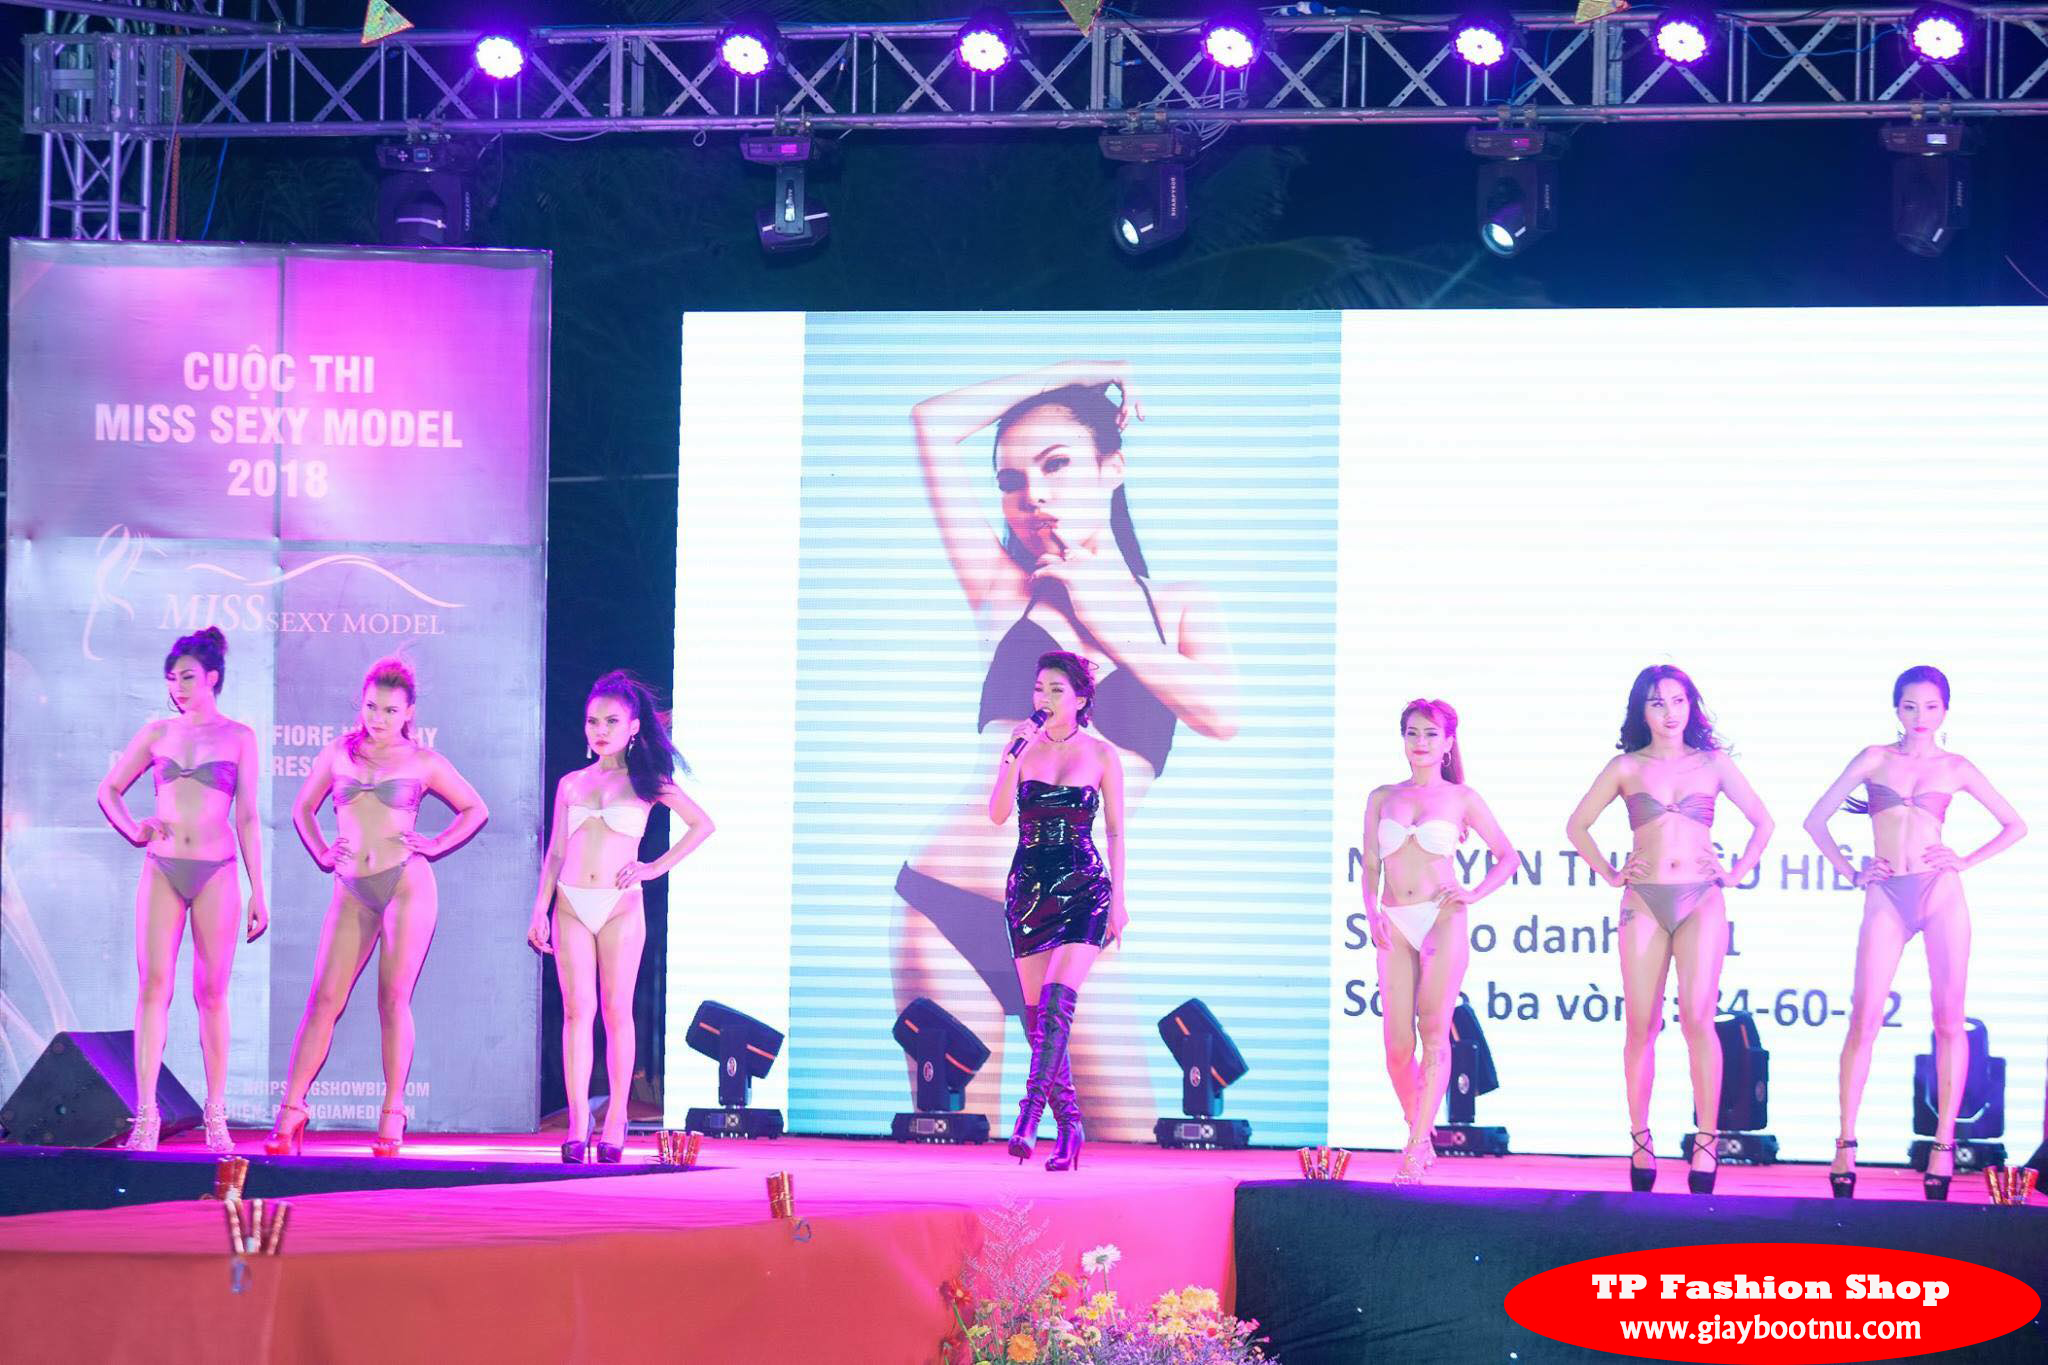 Ca sĩ Brianna Như Ý trình diễn trong đêm chung kết Miss Sexy Model 2018